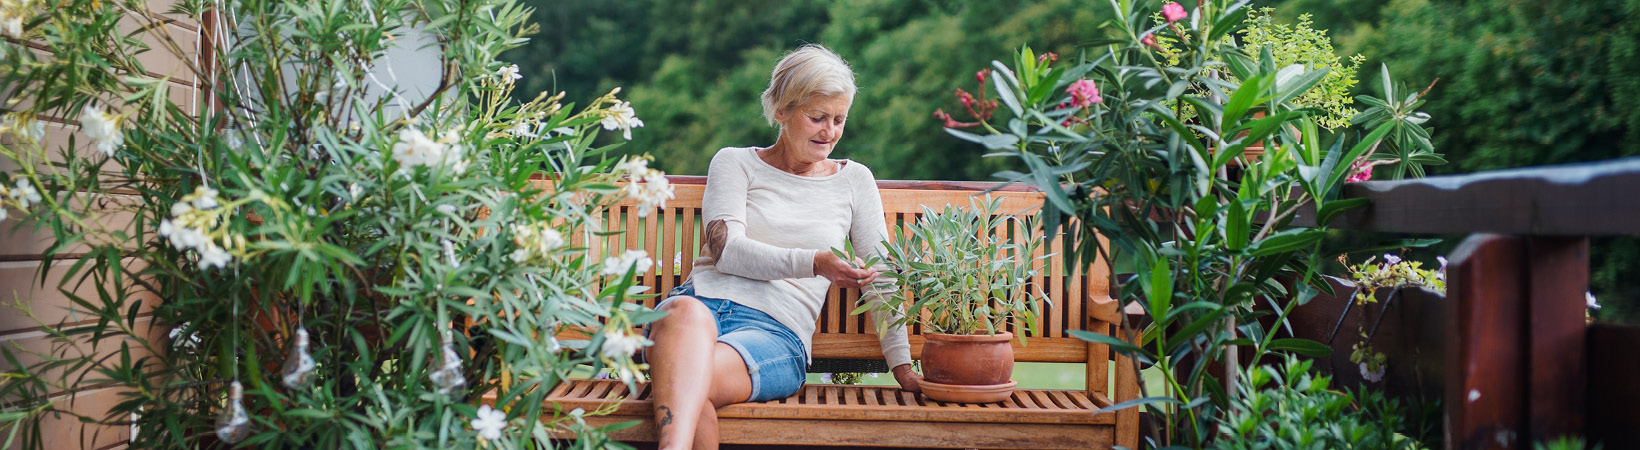 Woman on a garden bench